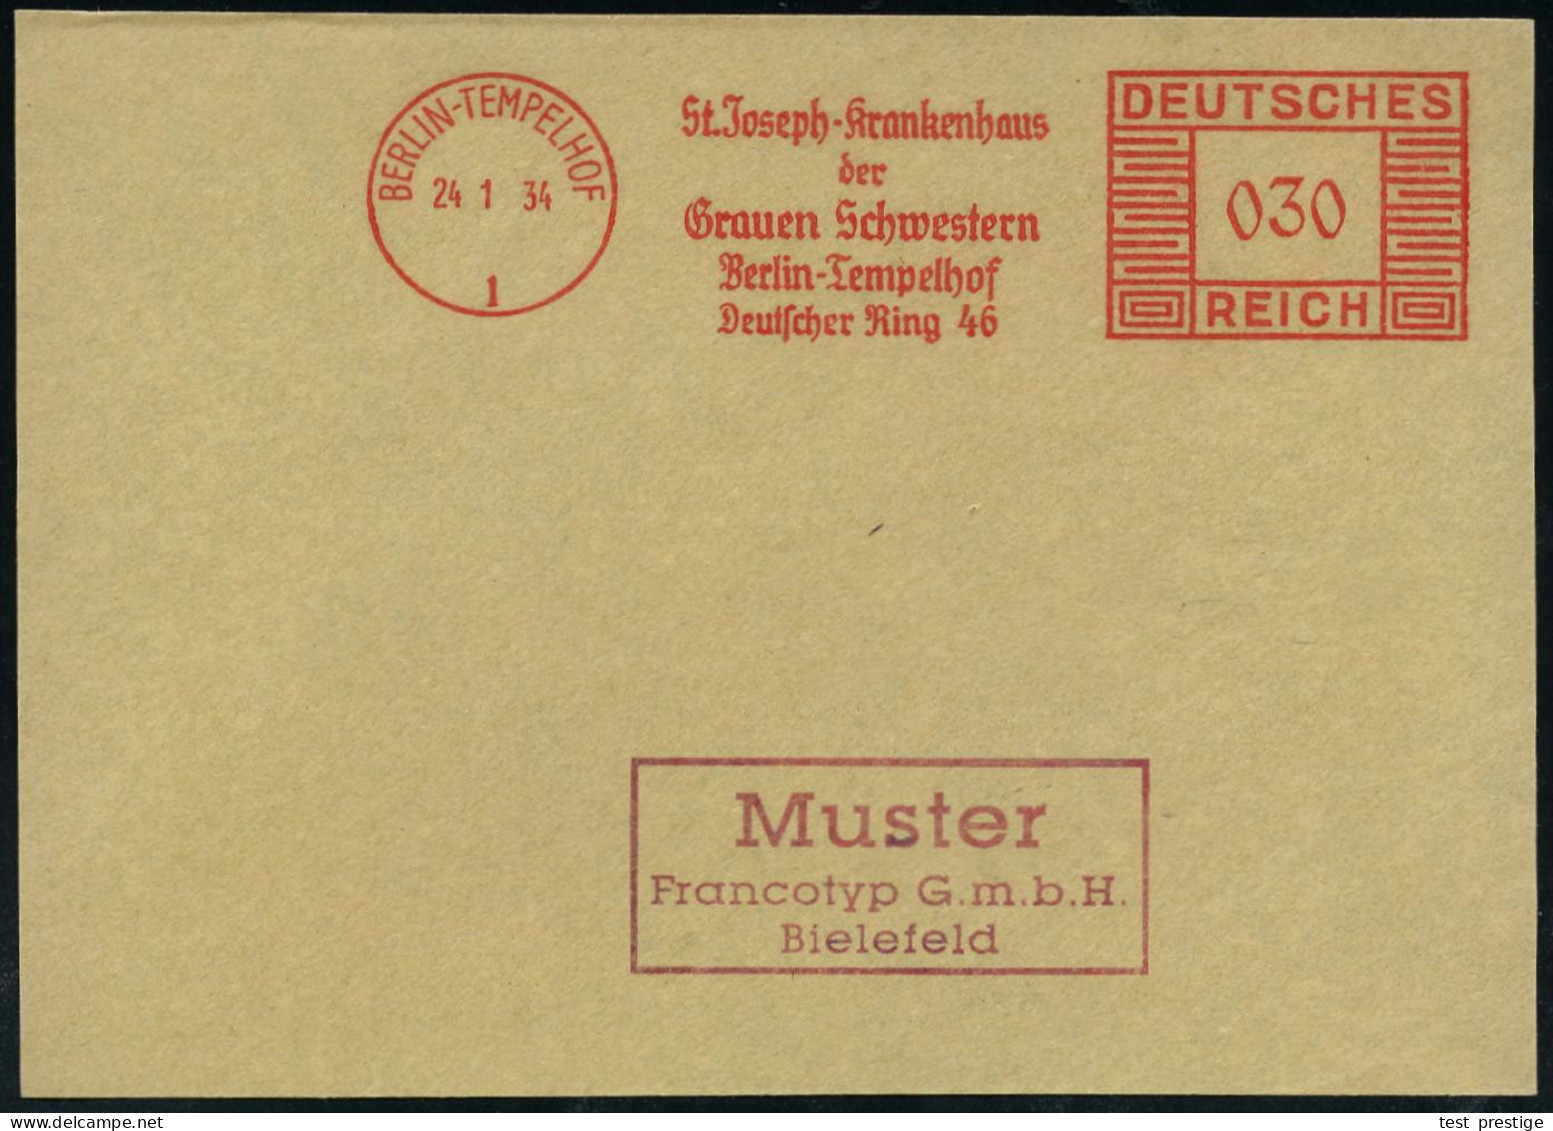 BERLIN-TEMPELHOF/ 1/ St.Joseph-Krankenhaus/ Der/ Grauen Schwestern 1934 (24.1.) AFS-Musterabdruck Francotyp "Mäanderrech - Medicina